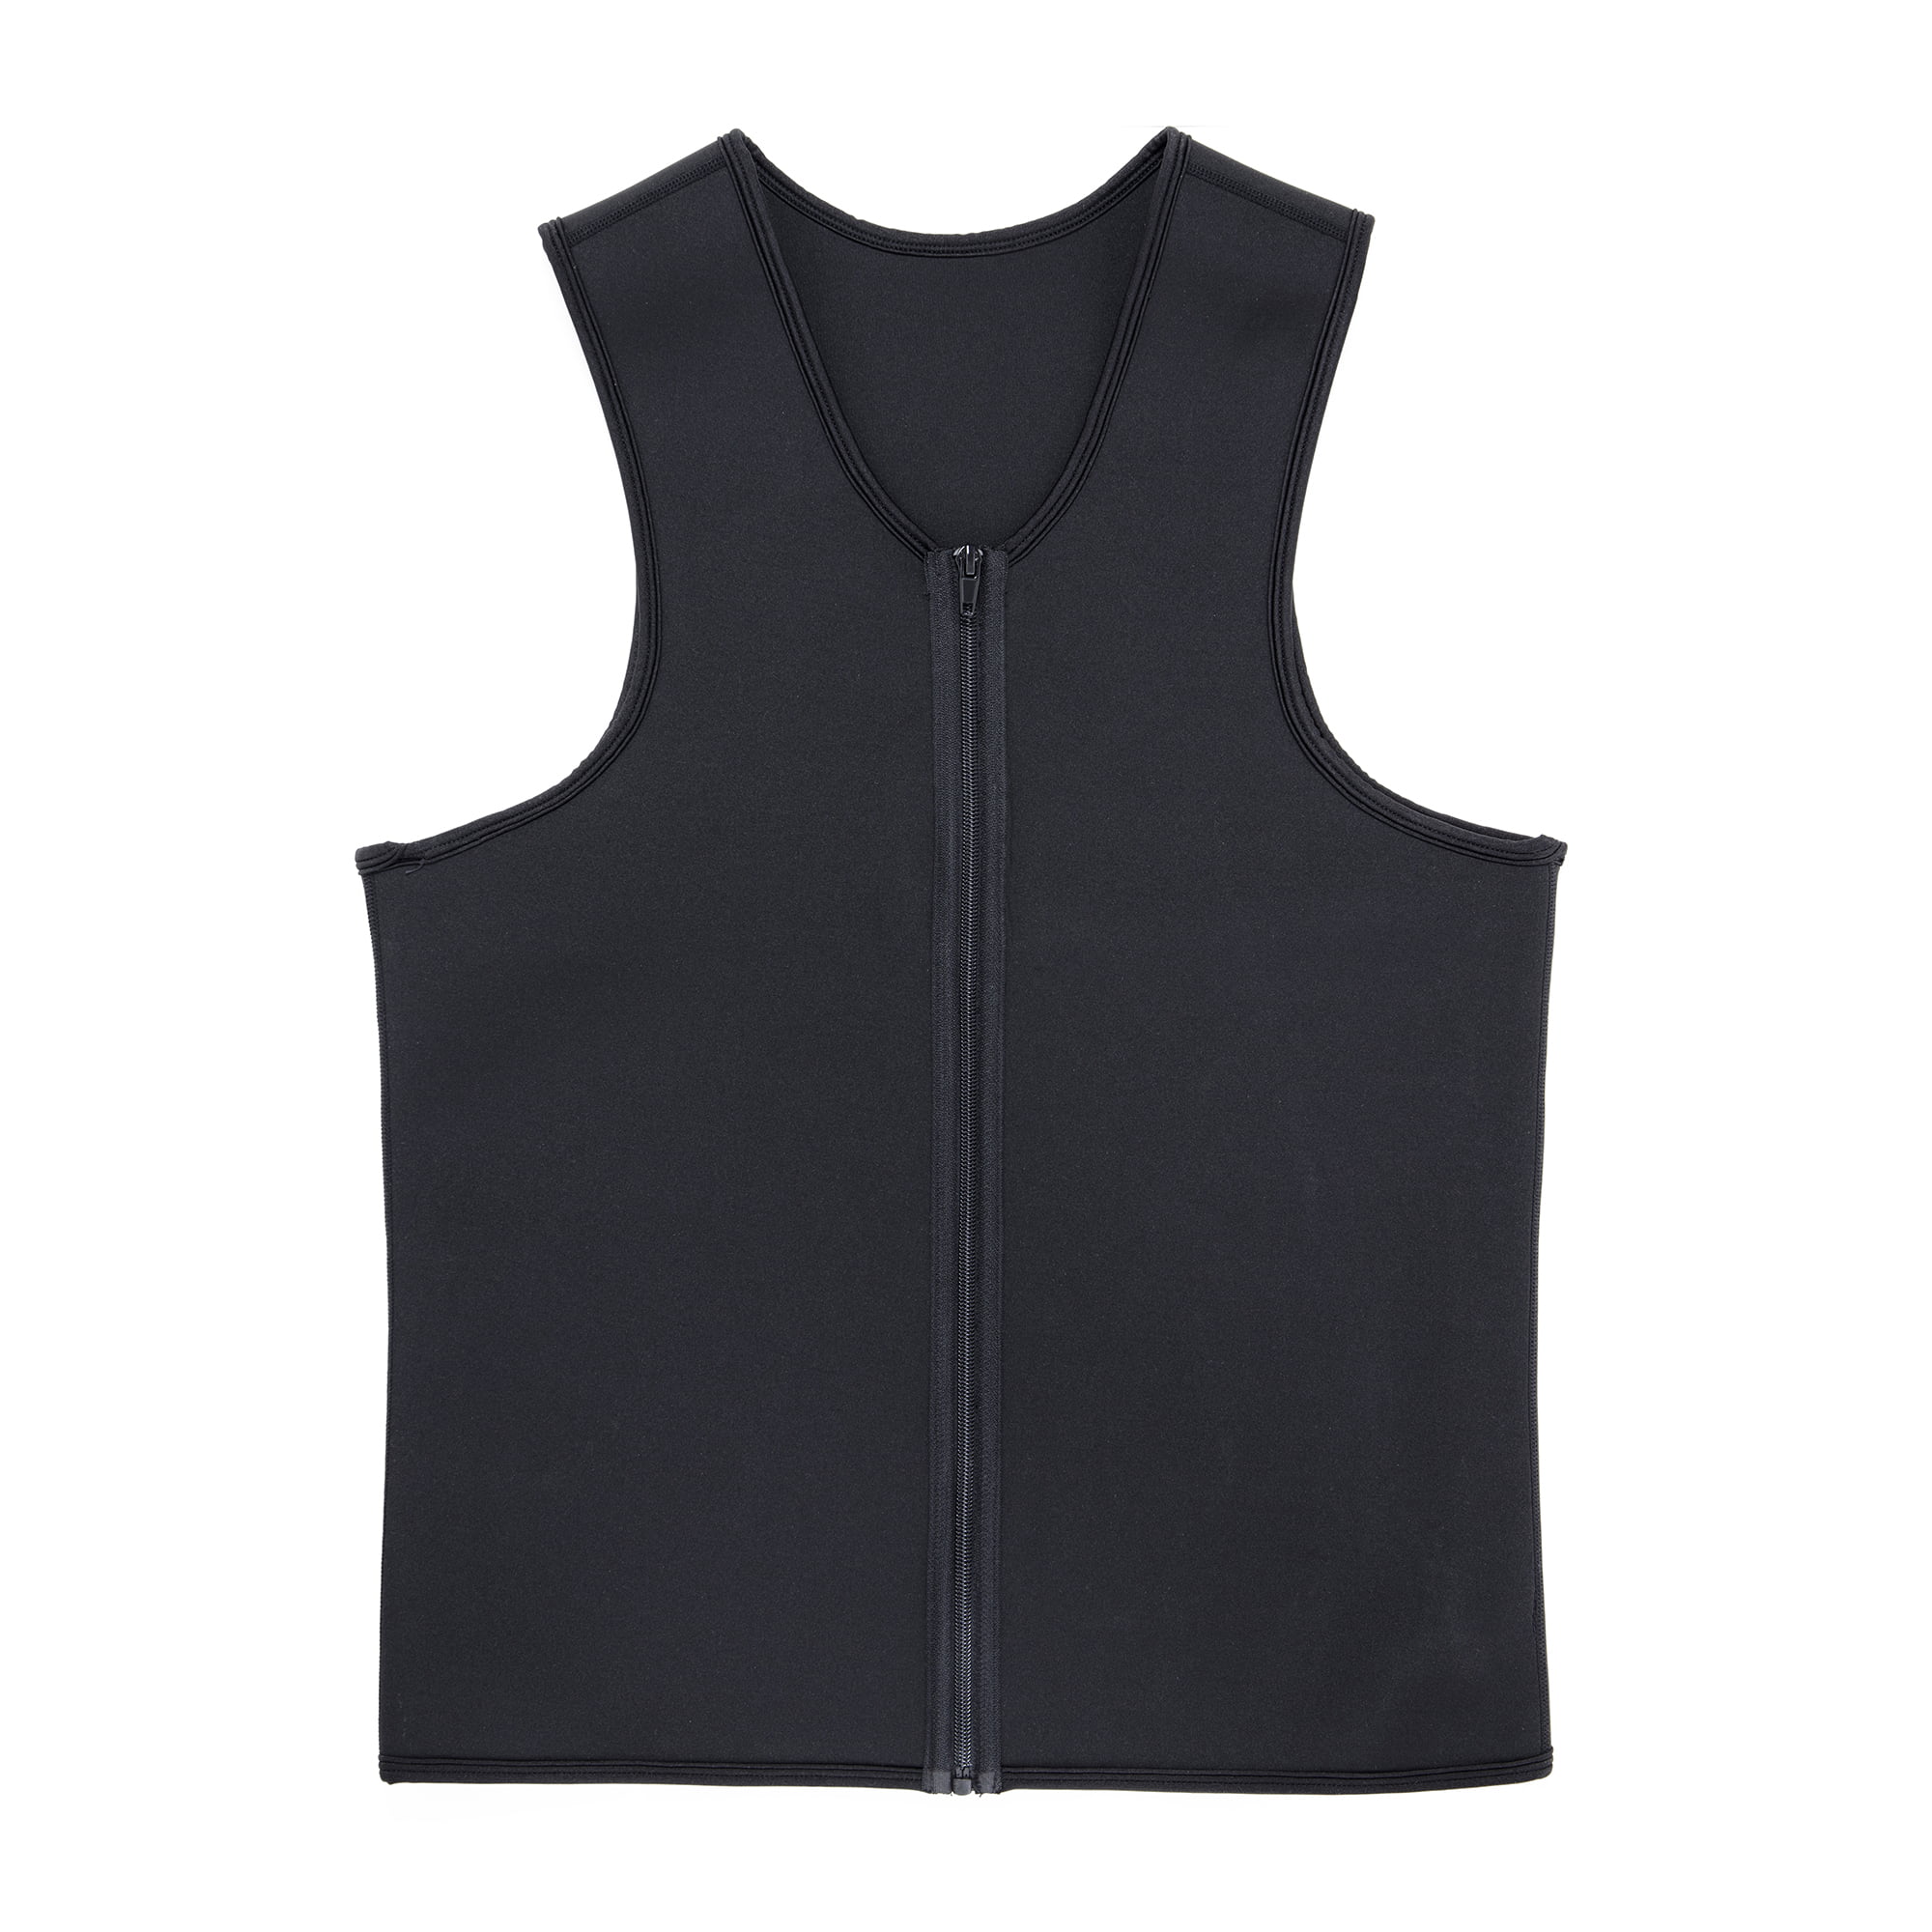 COMFREE Neoprene Sauna Suit for Men Waist Trainer Sweat Vest Zipper Body  Shaper with Adjustable Tank Top